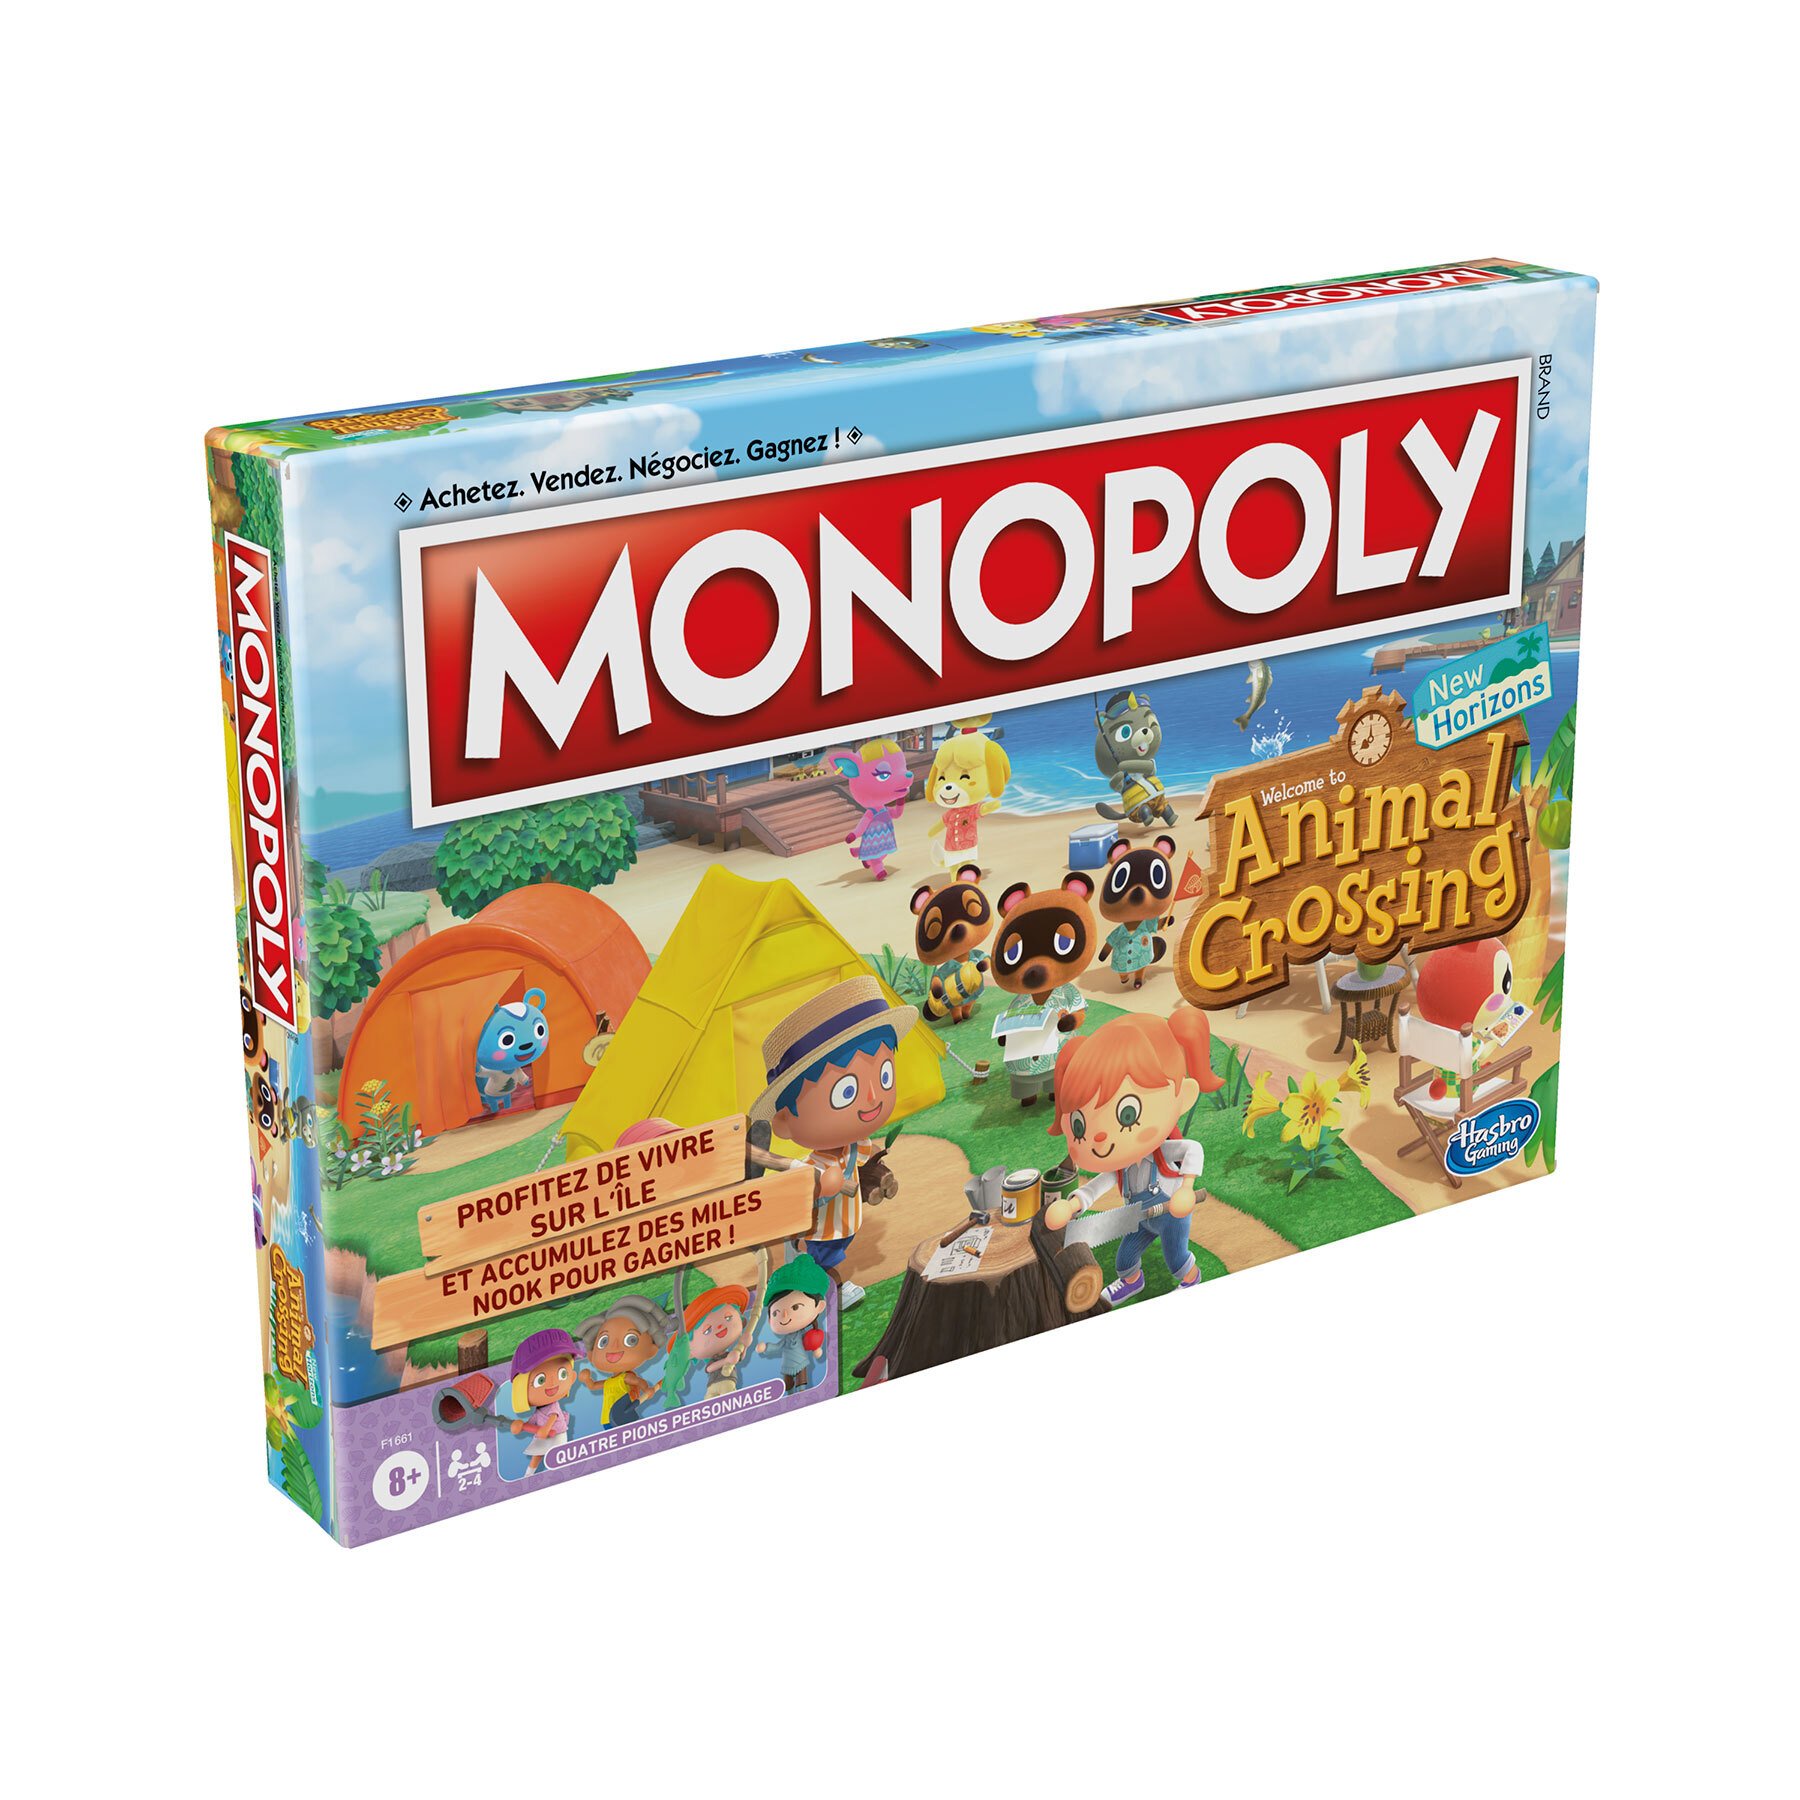 Monopoly (Switch) au meilleur prix sur